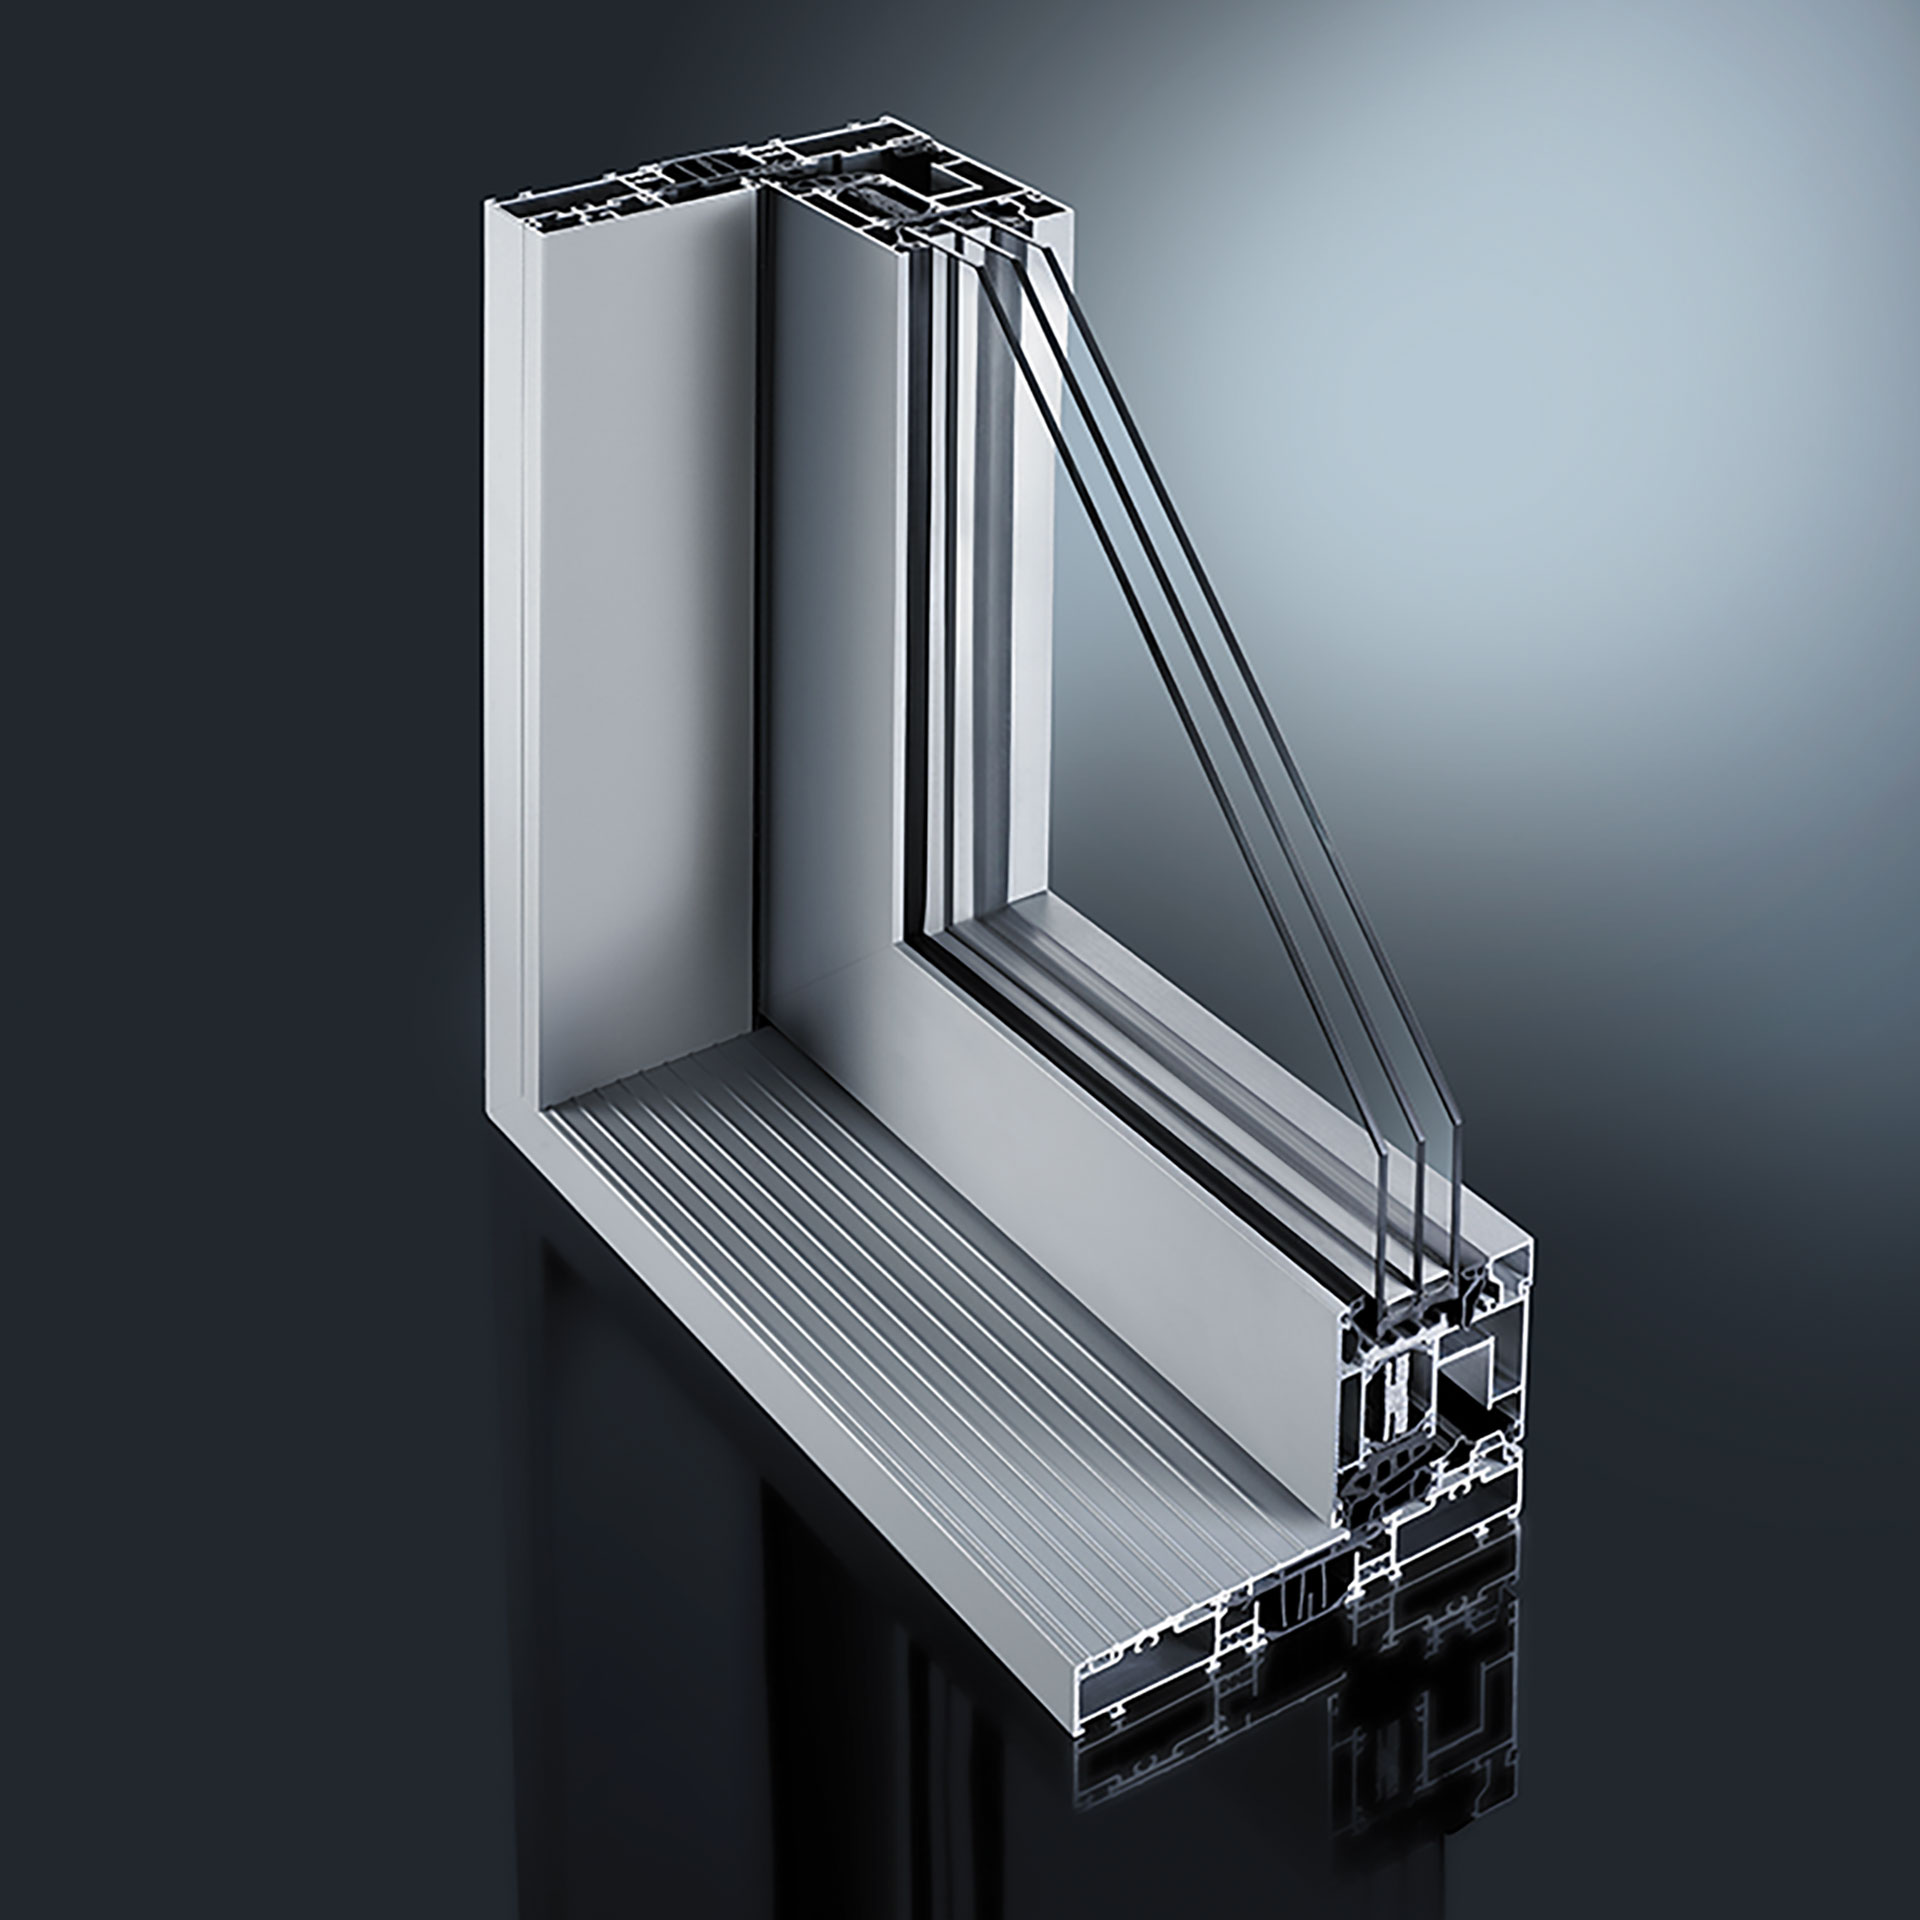 GUTMANN biedt ook klassieke aluminium schuifdeuroplossingen en een verdiepingshoge premium hefschuifdeur. Dit wordt aangevuld met aluminium schalen voor PVC-U schuifdeuren.